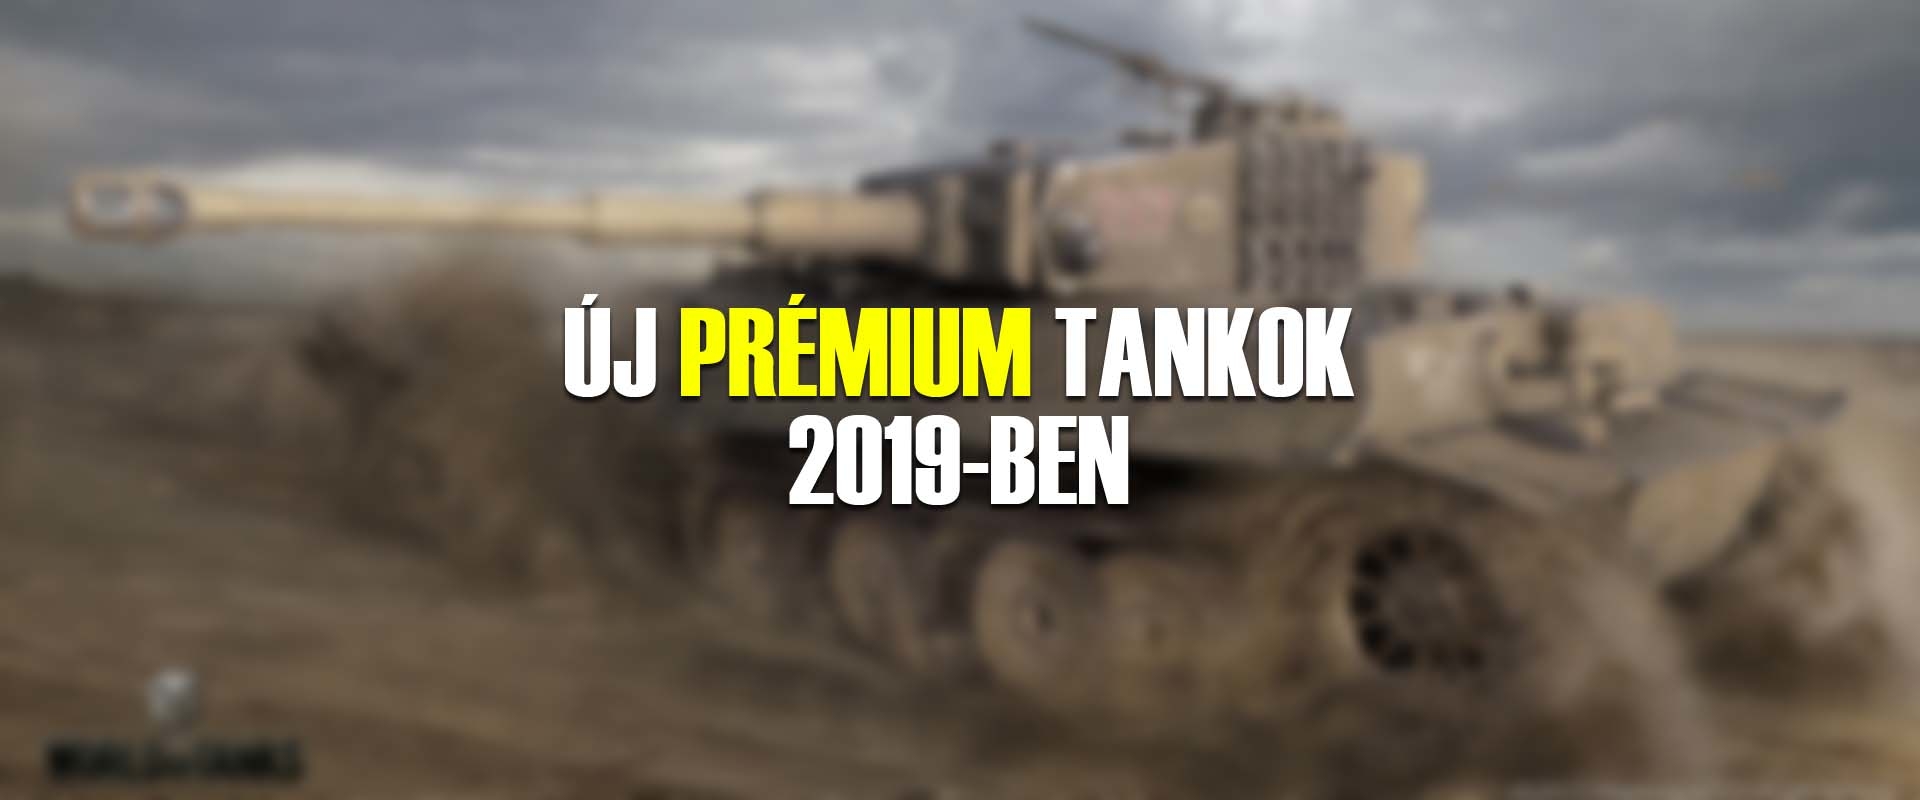 Új prémium tankok, amik 2019-ben érkeznek!